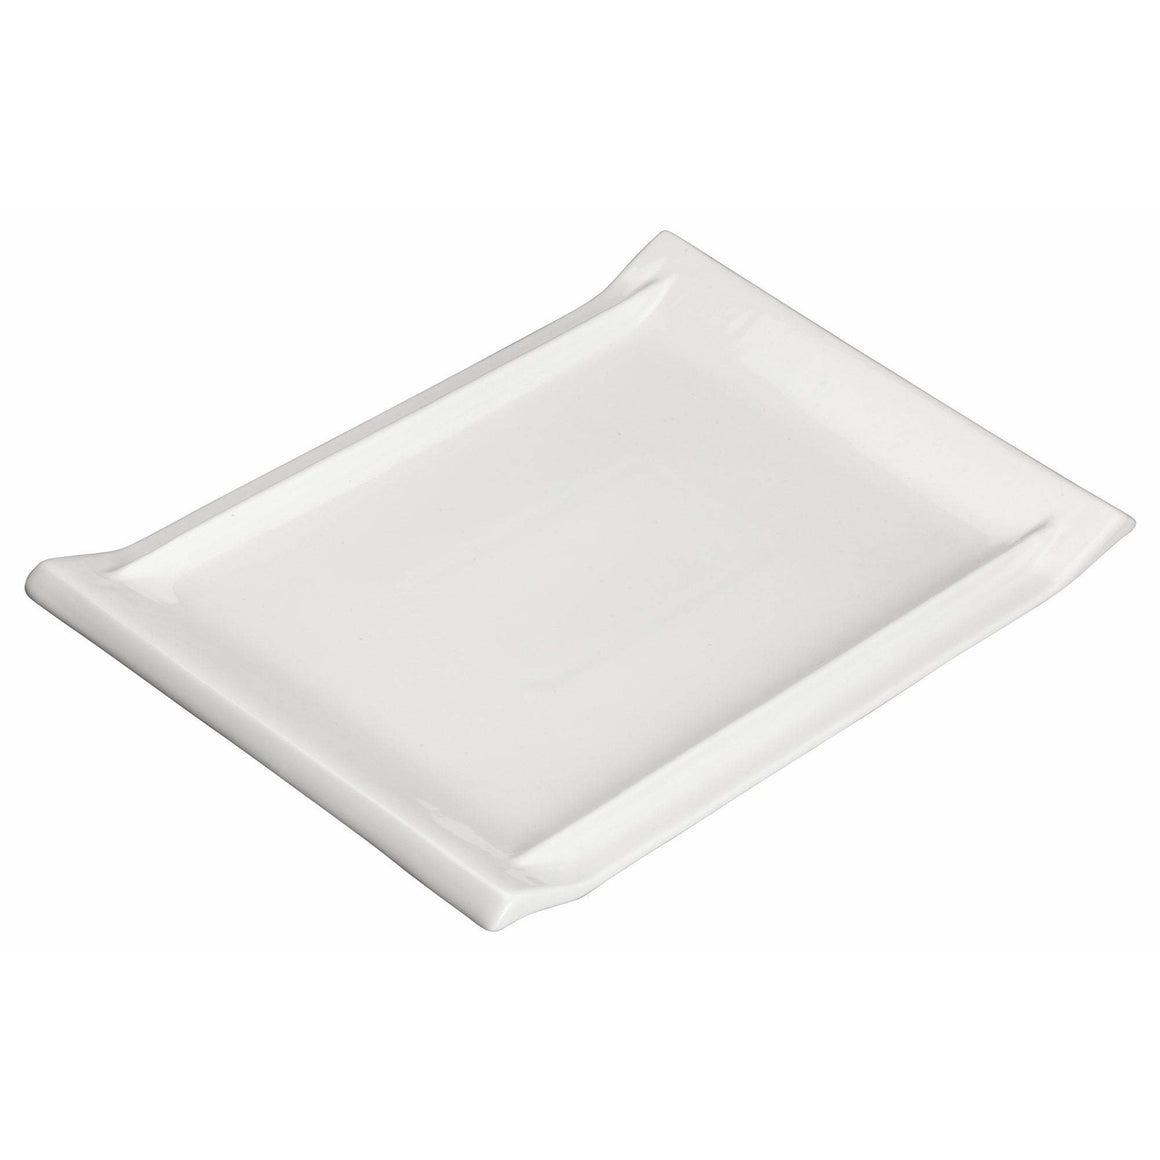 Winco - WDP017-113 - 13-7/8" x 9-1/4" Porcelain Rectangular Platter, Bright White, 12 pcs/case - Dinnerware - Maltese & Co New and Used  restaurant Equipment 